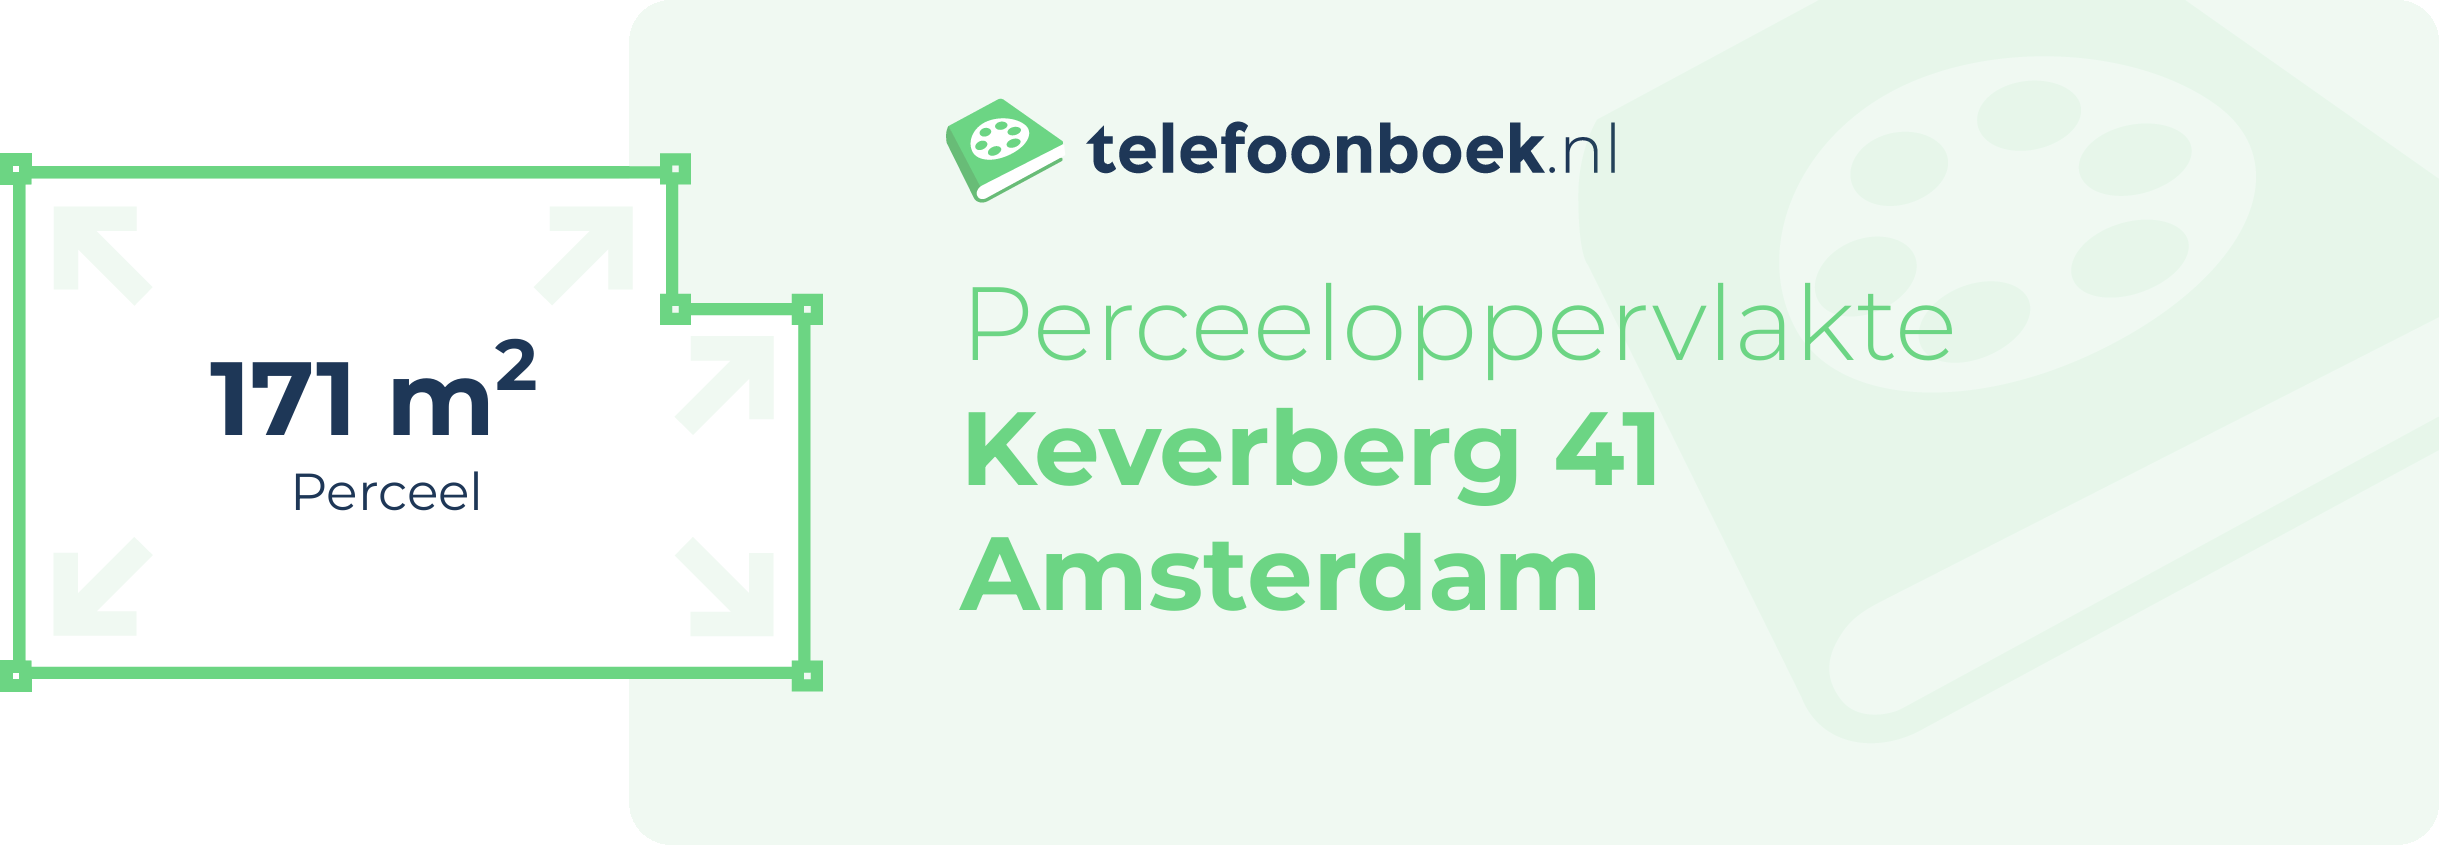 Perceeloppervlakte Keverberg 41 Amsterdam